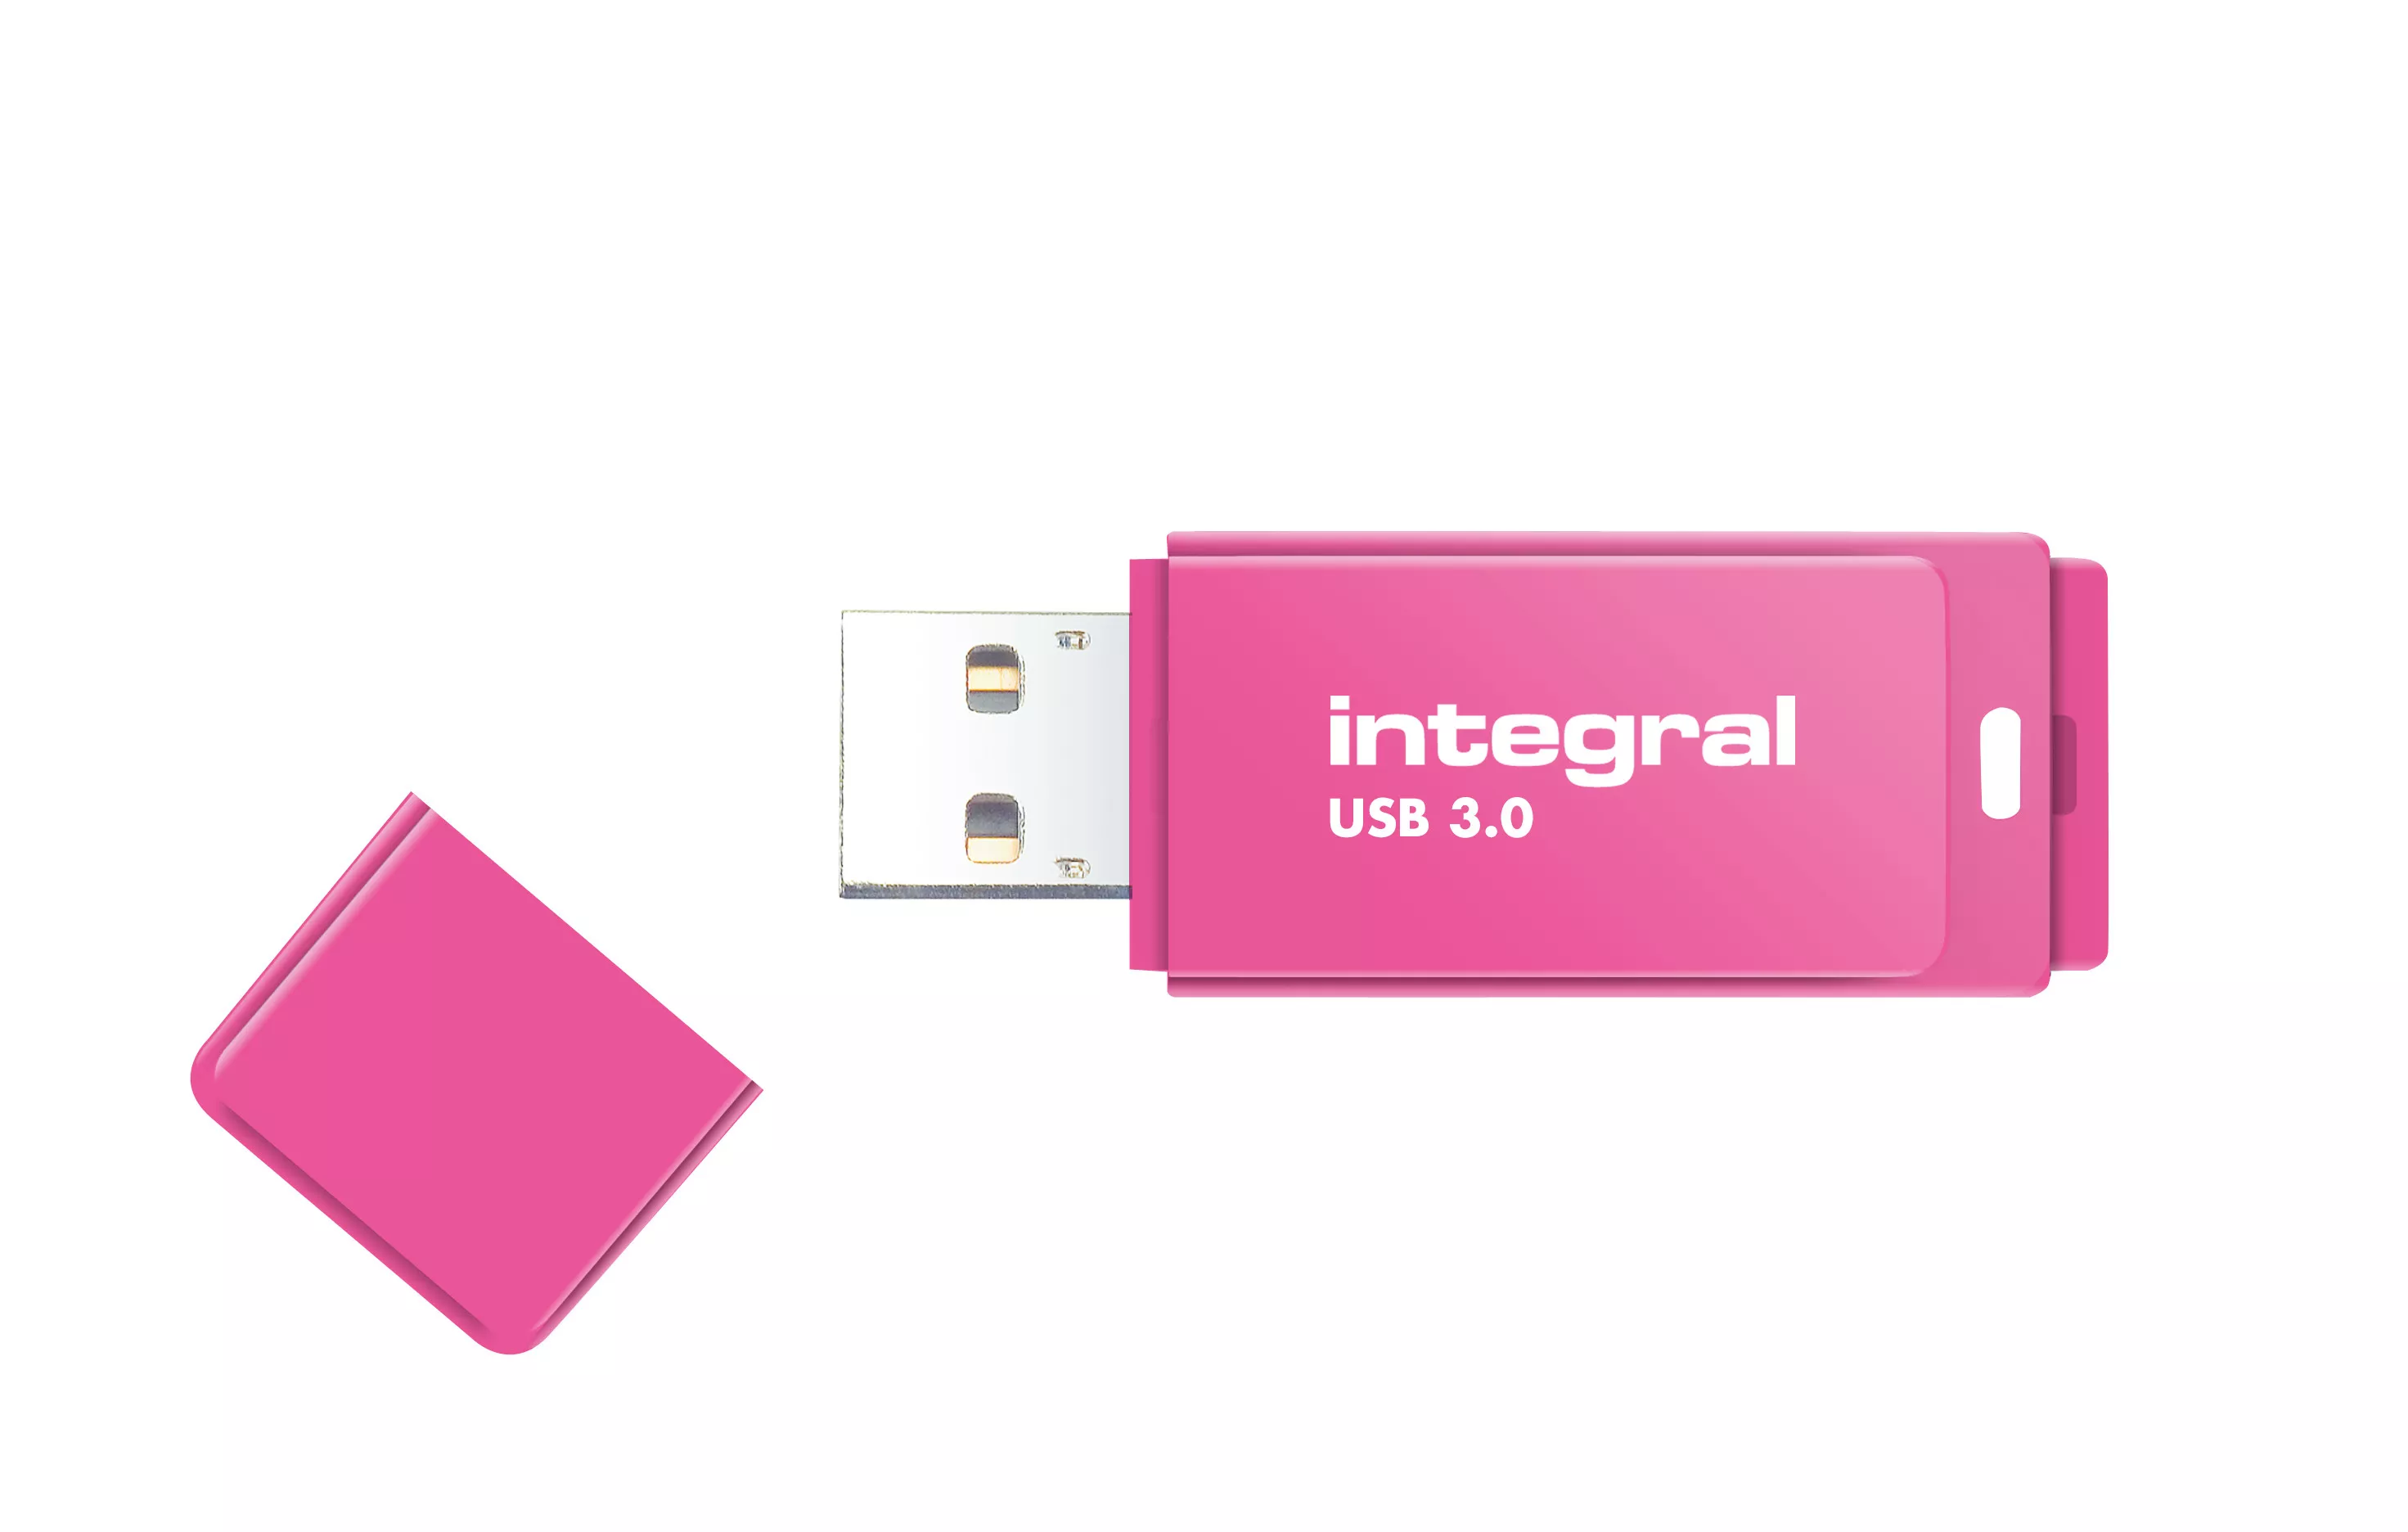 Achat Integral 64GB USB3.0 DRIVE NEON PINK UP TO R-100 W-30 et autres produits de la marque Integral